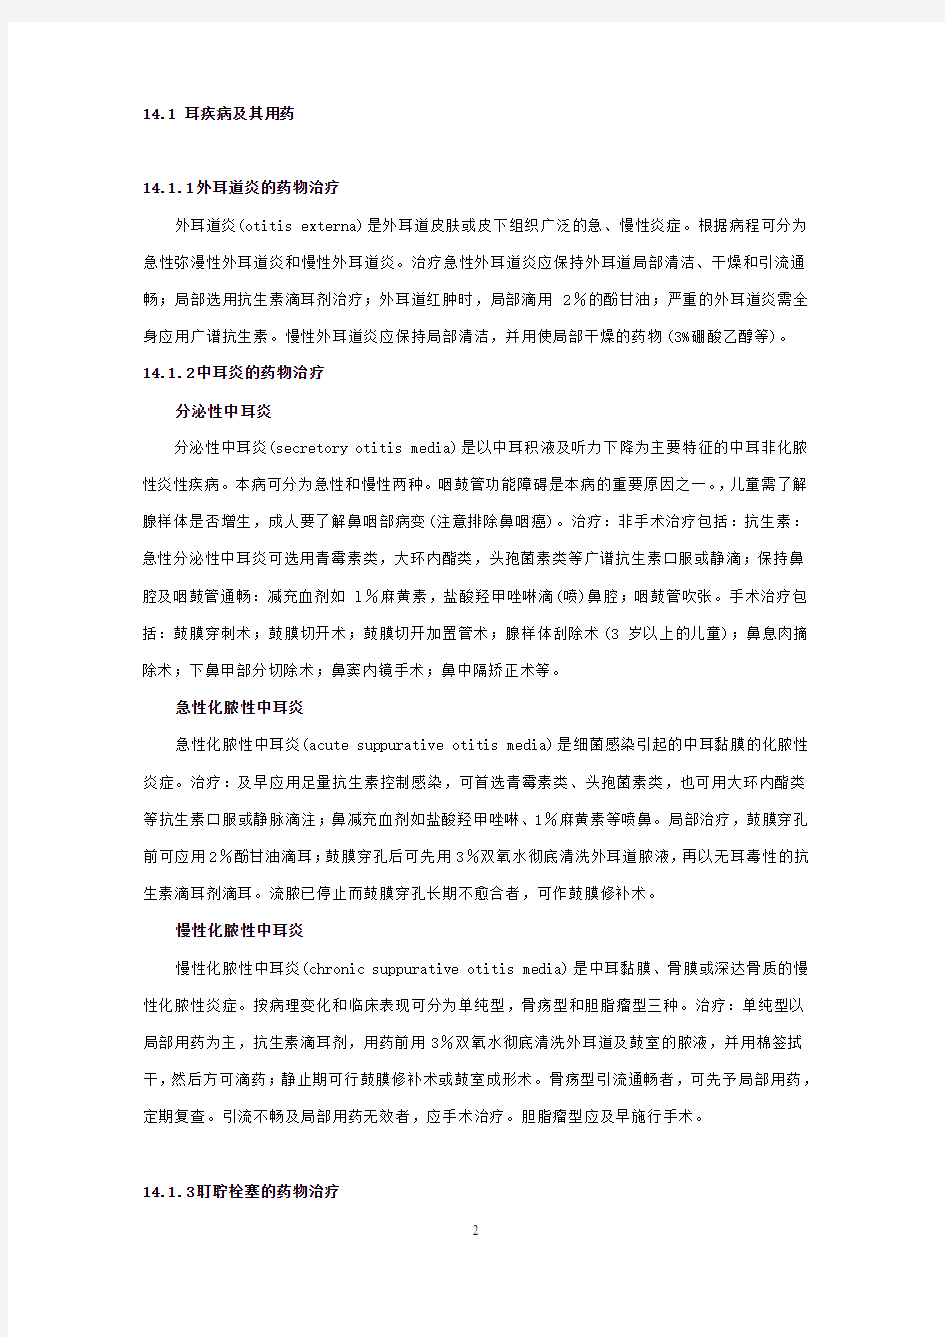 中国国家处方集 第14章 耳、鼻、喉科疾病用药